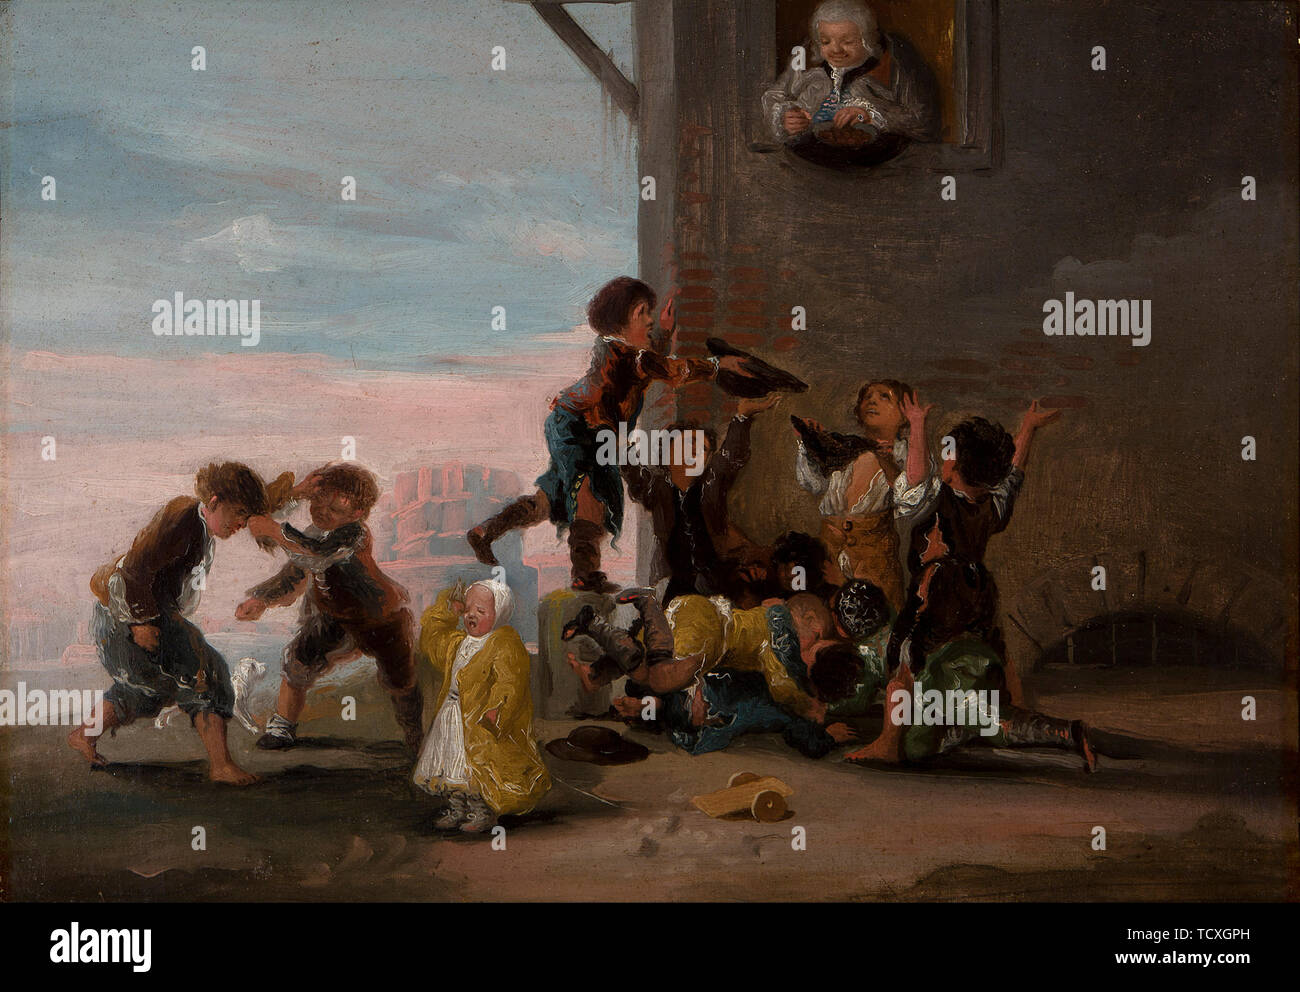 Les enfants luttent pour les châtaignes (Niños por peleándose castañas), 1786. Organisateur : Goya, Francisco de (1746-1828). Banque D'Images